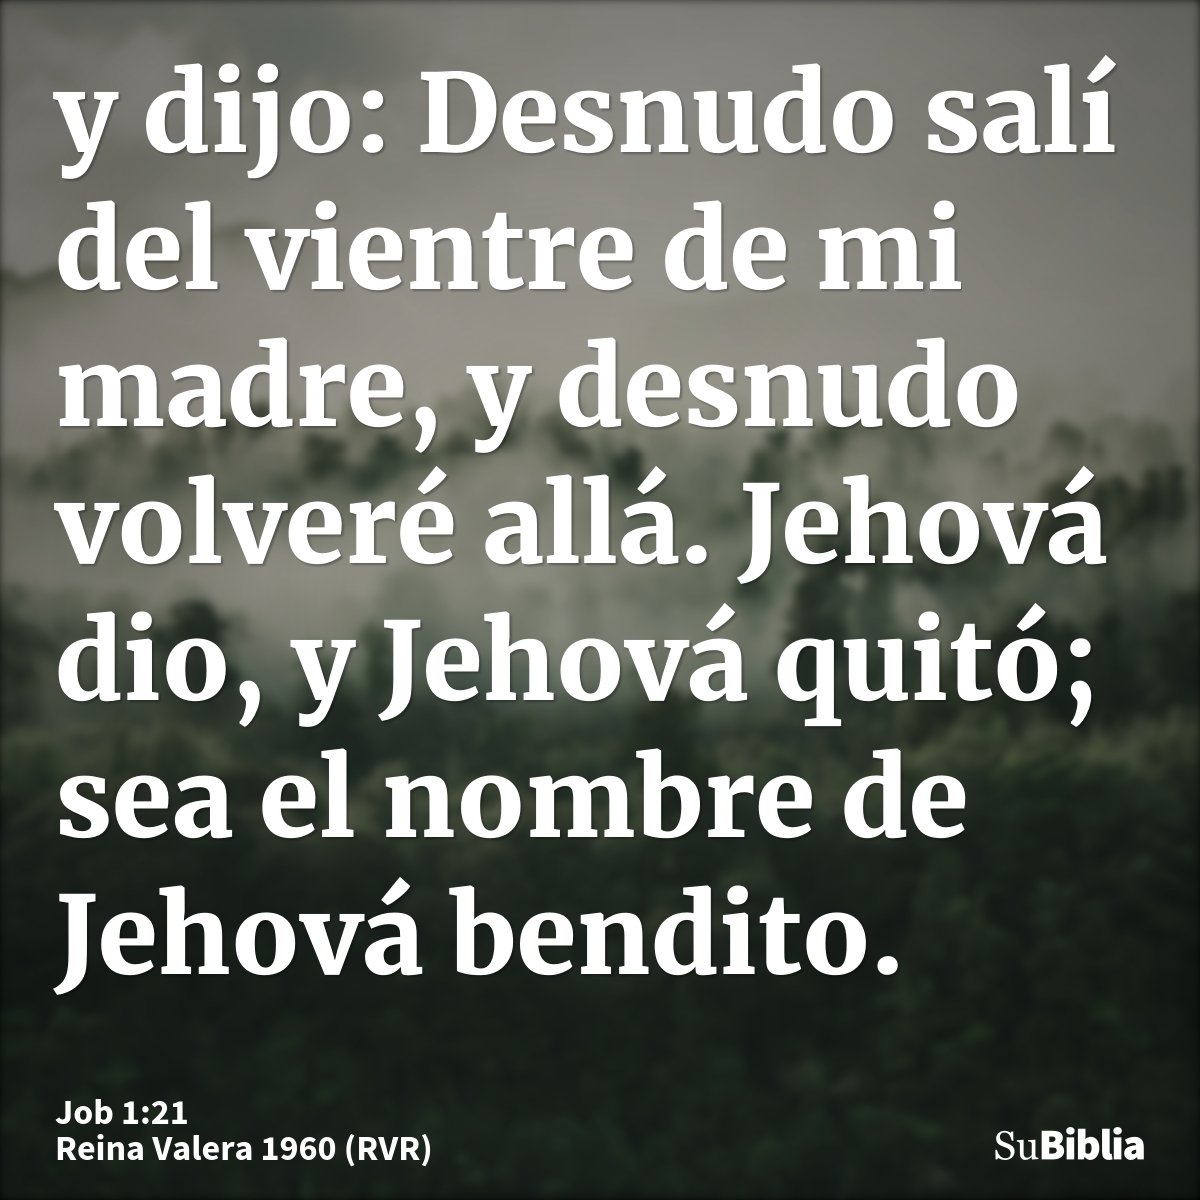 y dijo: Desnudo salí del vientre de mi madre, y desnudo volveré allá. Jehová dio, y Jehová quitó; sea el nombre de Jehová bendito.